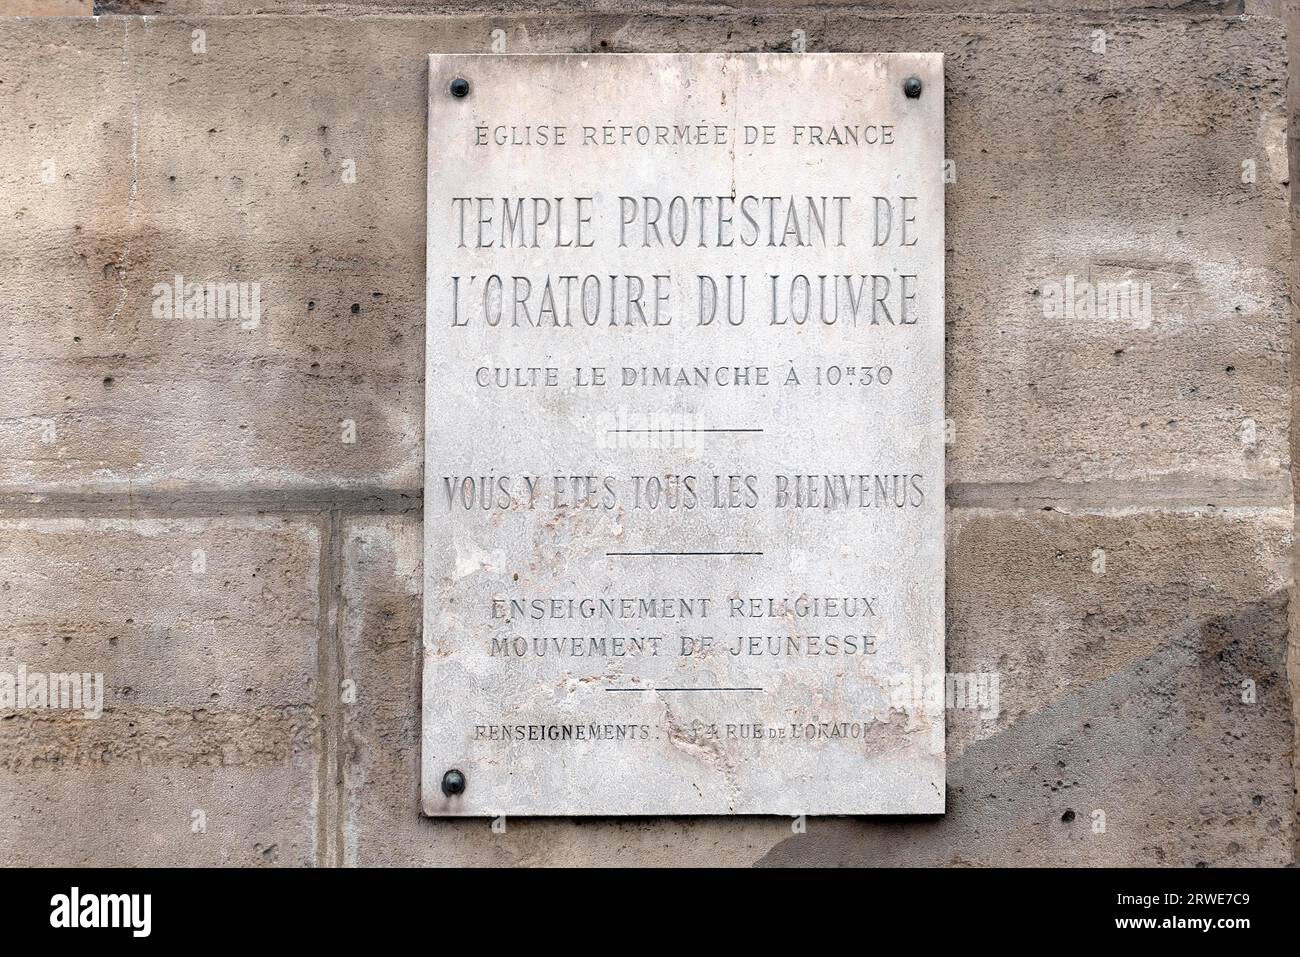 Tablero informativo en la Iglesia Protestante Reformada, Rue Saint Honore, París, Francia Foto de stock